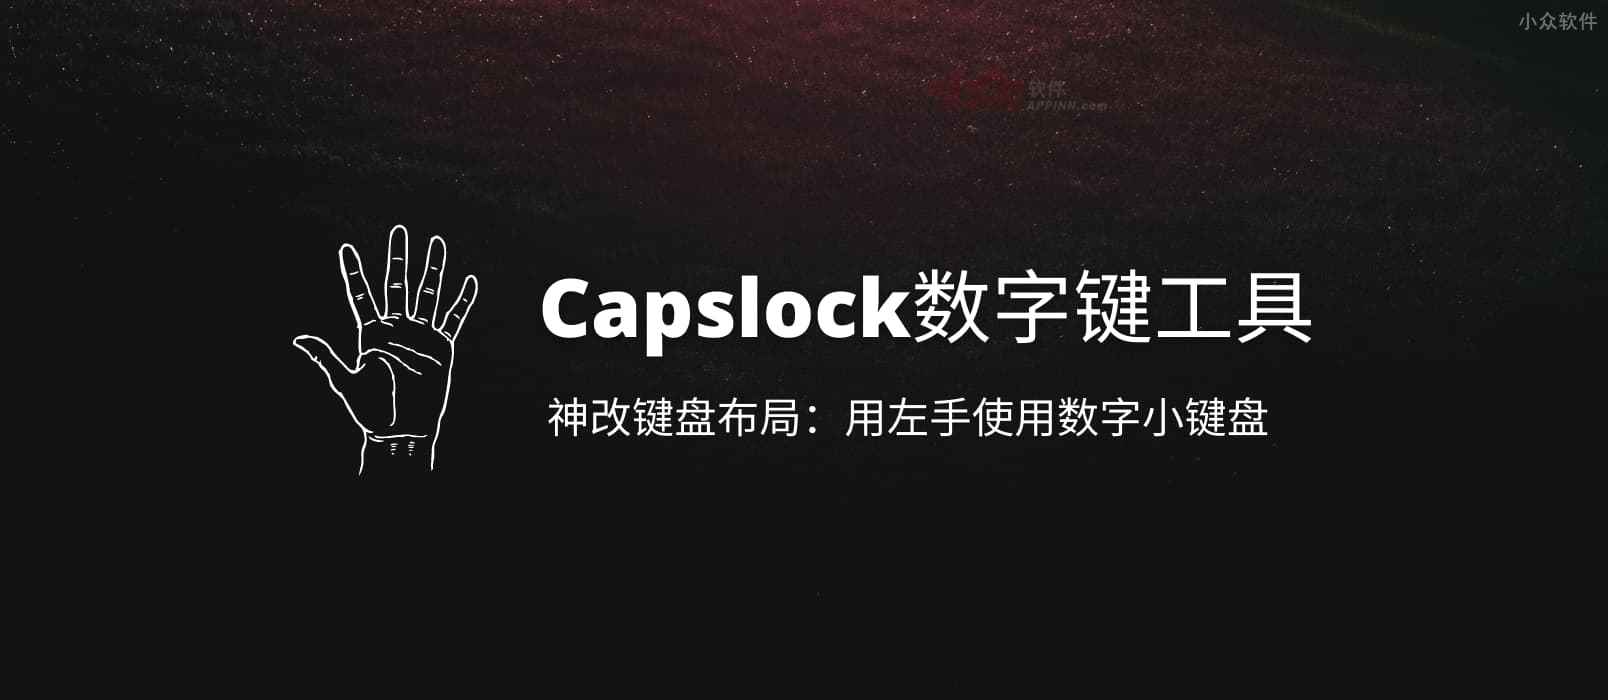 Capslock数字键工具 – 用 AHK 神改键盘布局：用左手使用数字小键盘